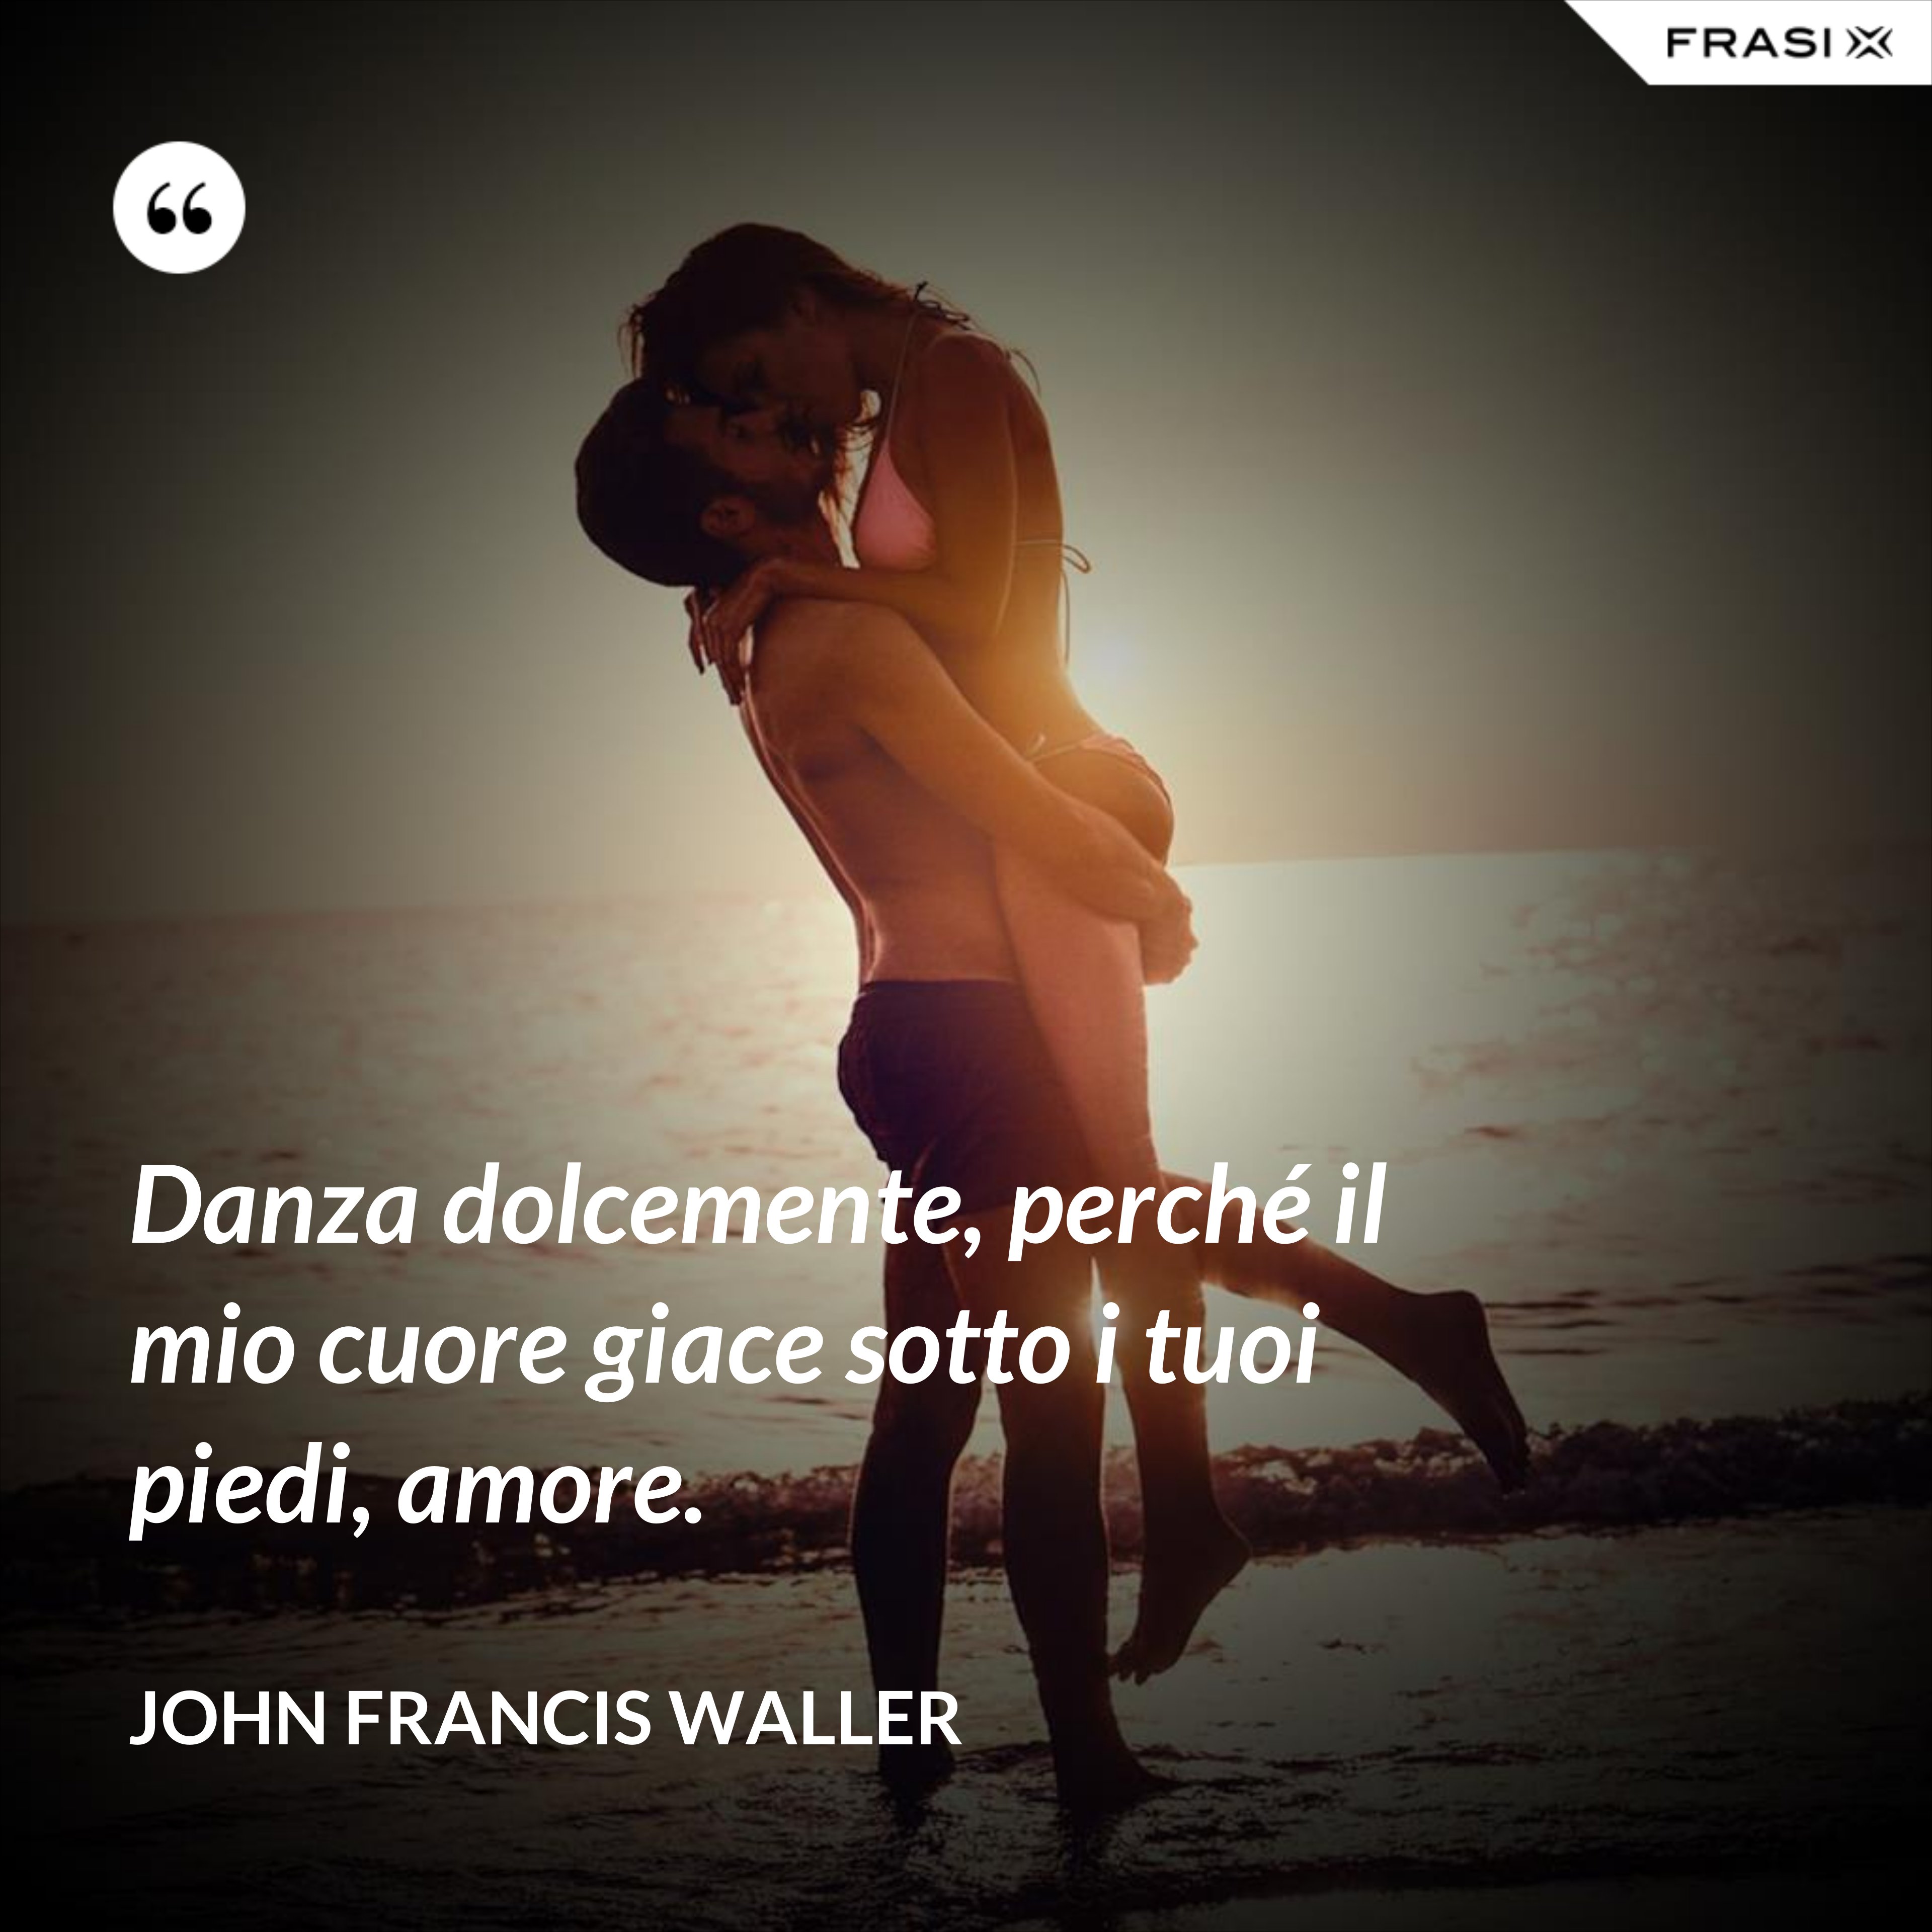 Danza dolcemente, perché il mio cuore giace sotto i tuoi piedi, amore. - John Francis Waller